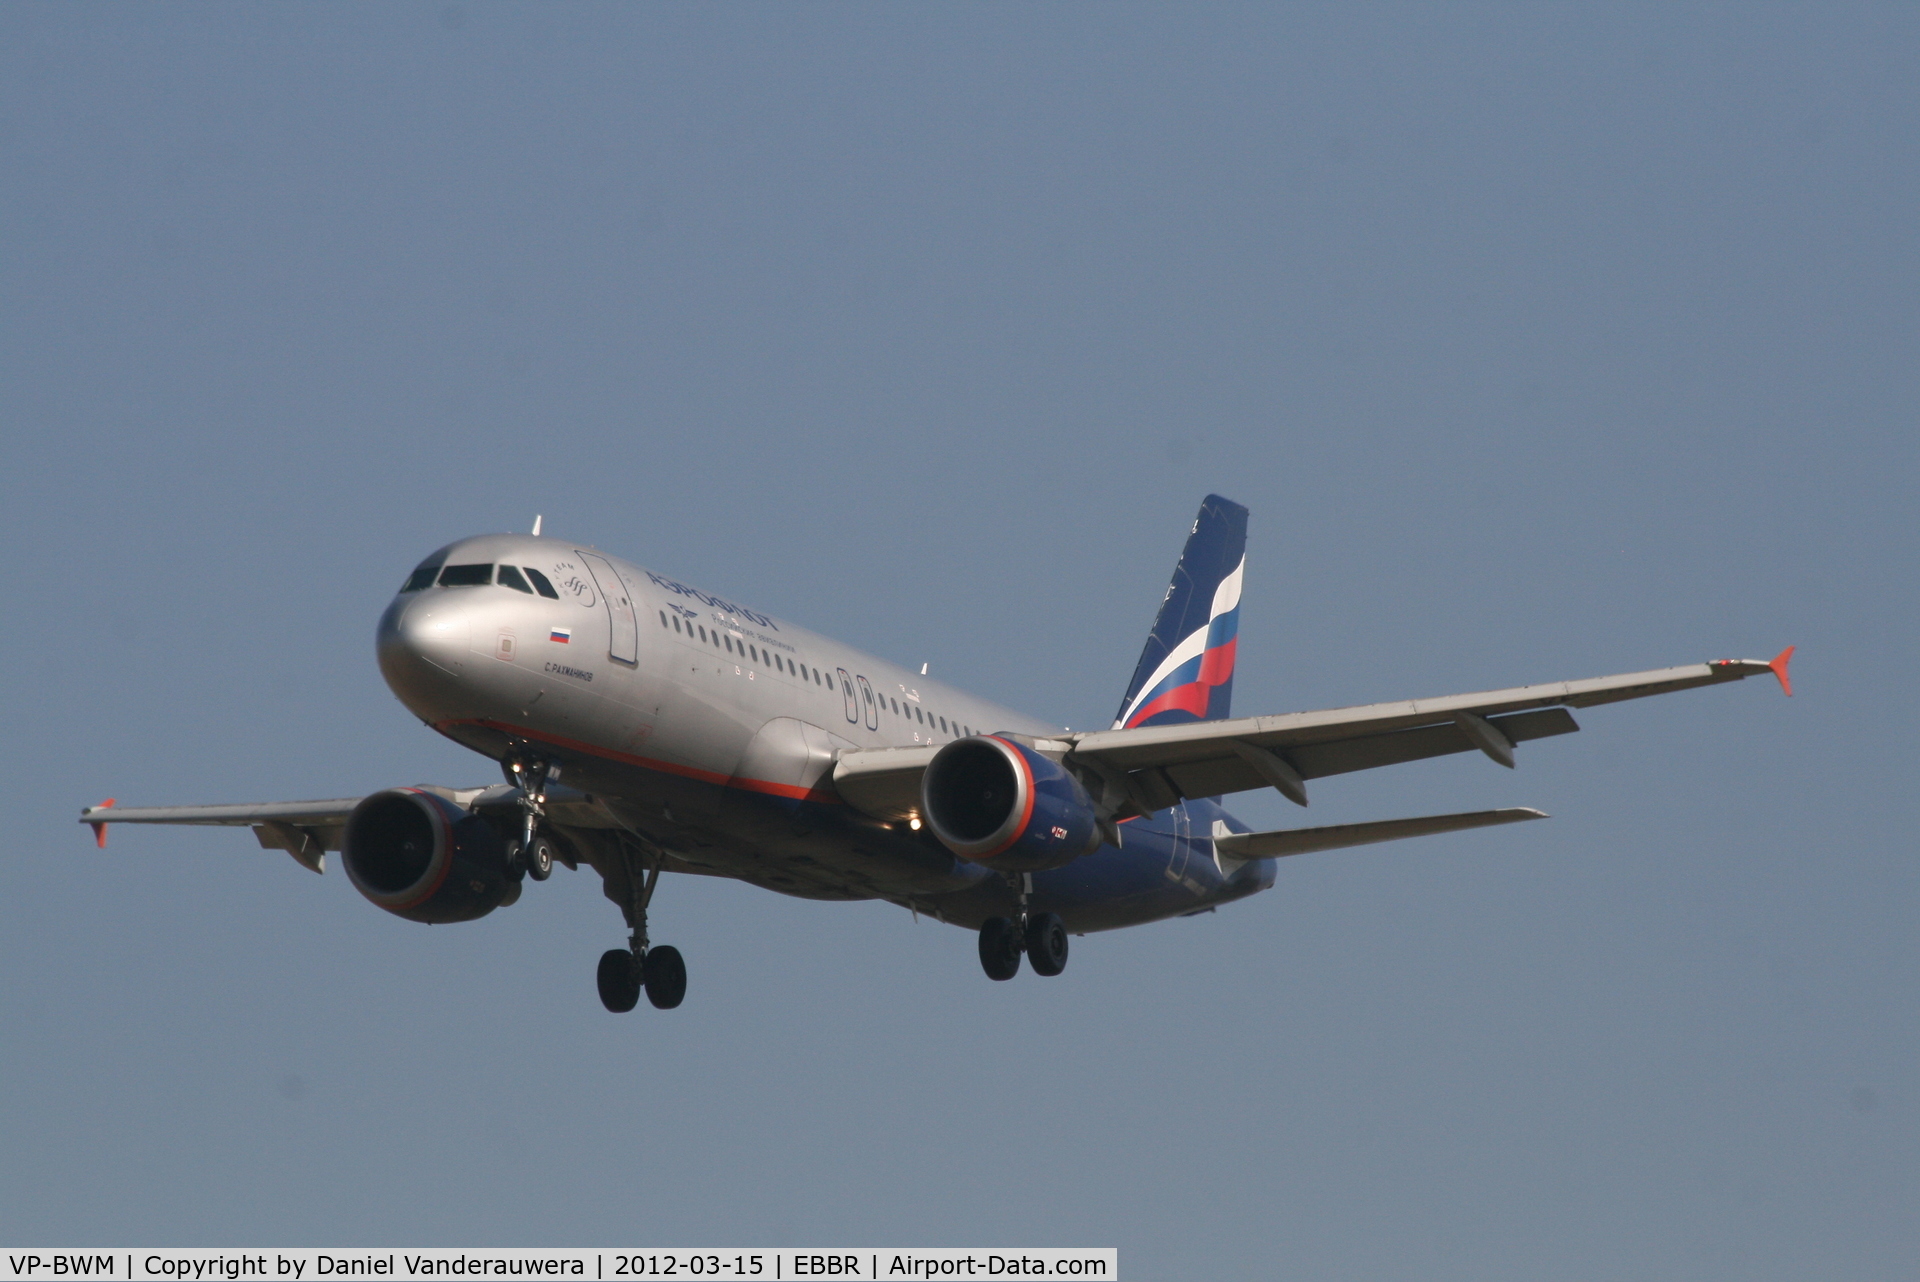 VP-BWM, 2004 Airbus A320-214 C/N 2233, Arrival of flight SU235 to RWY 25L